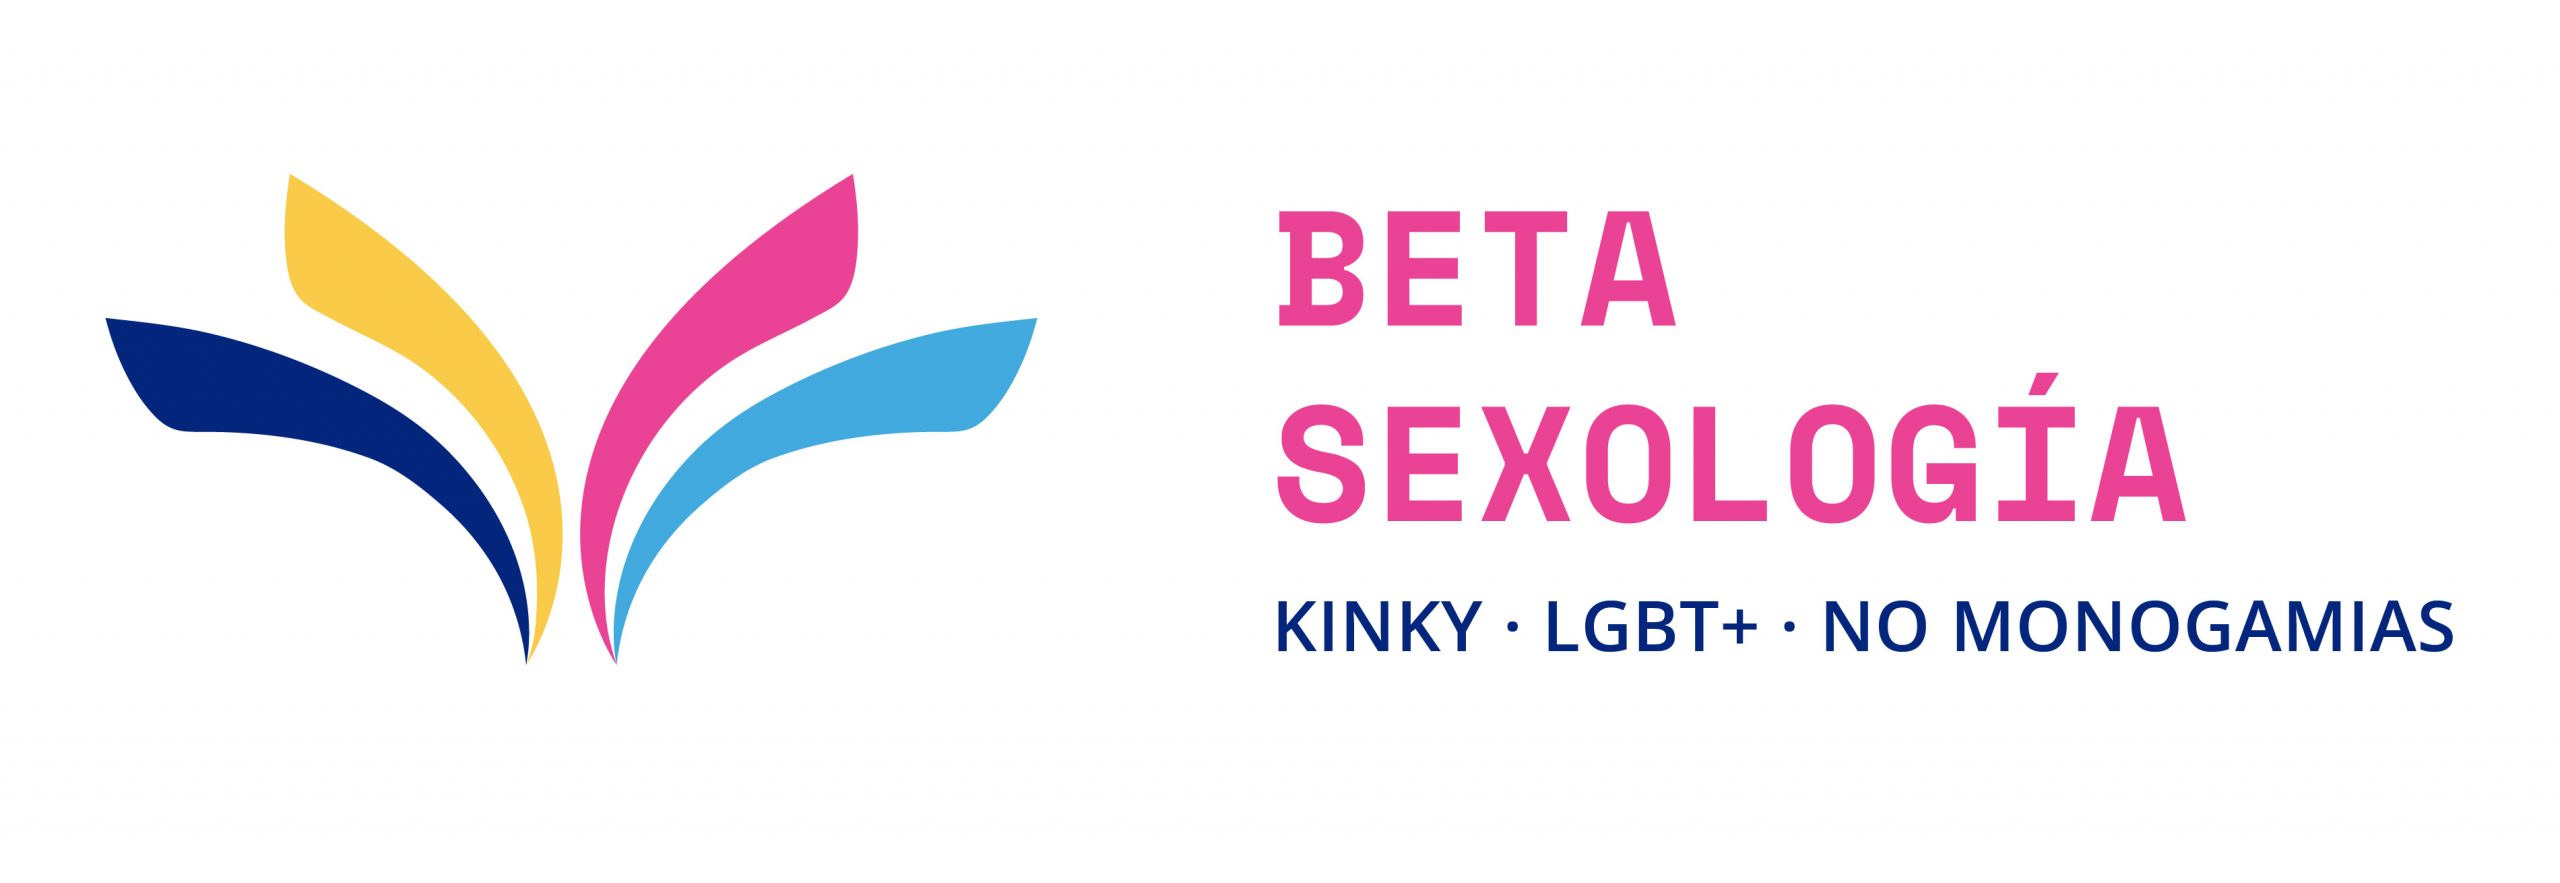 Beta Sexología